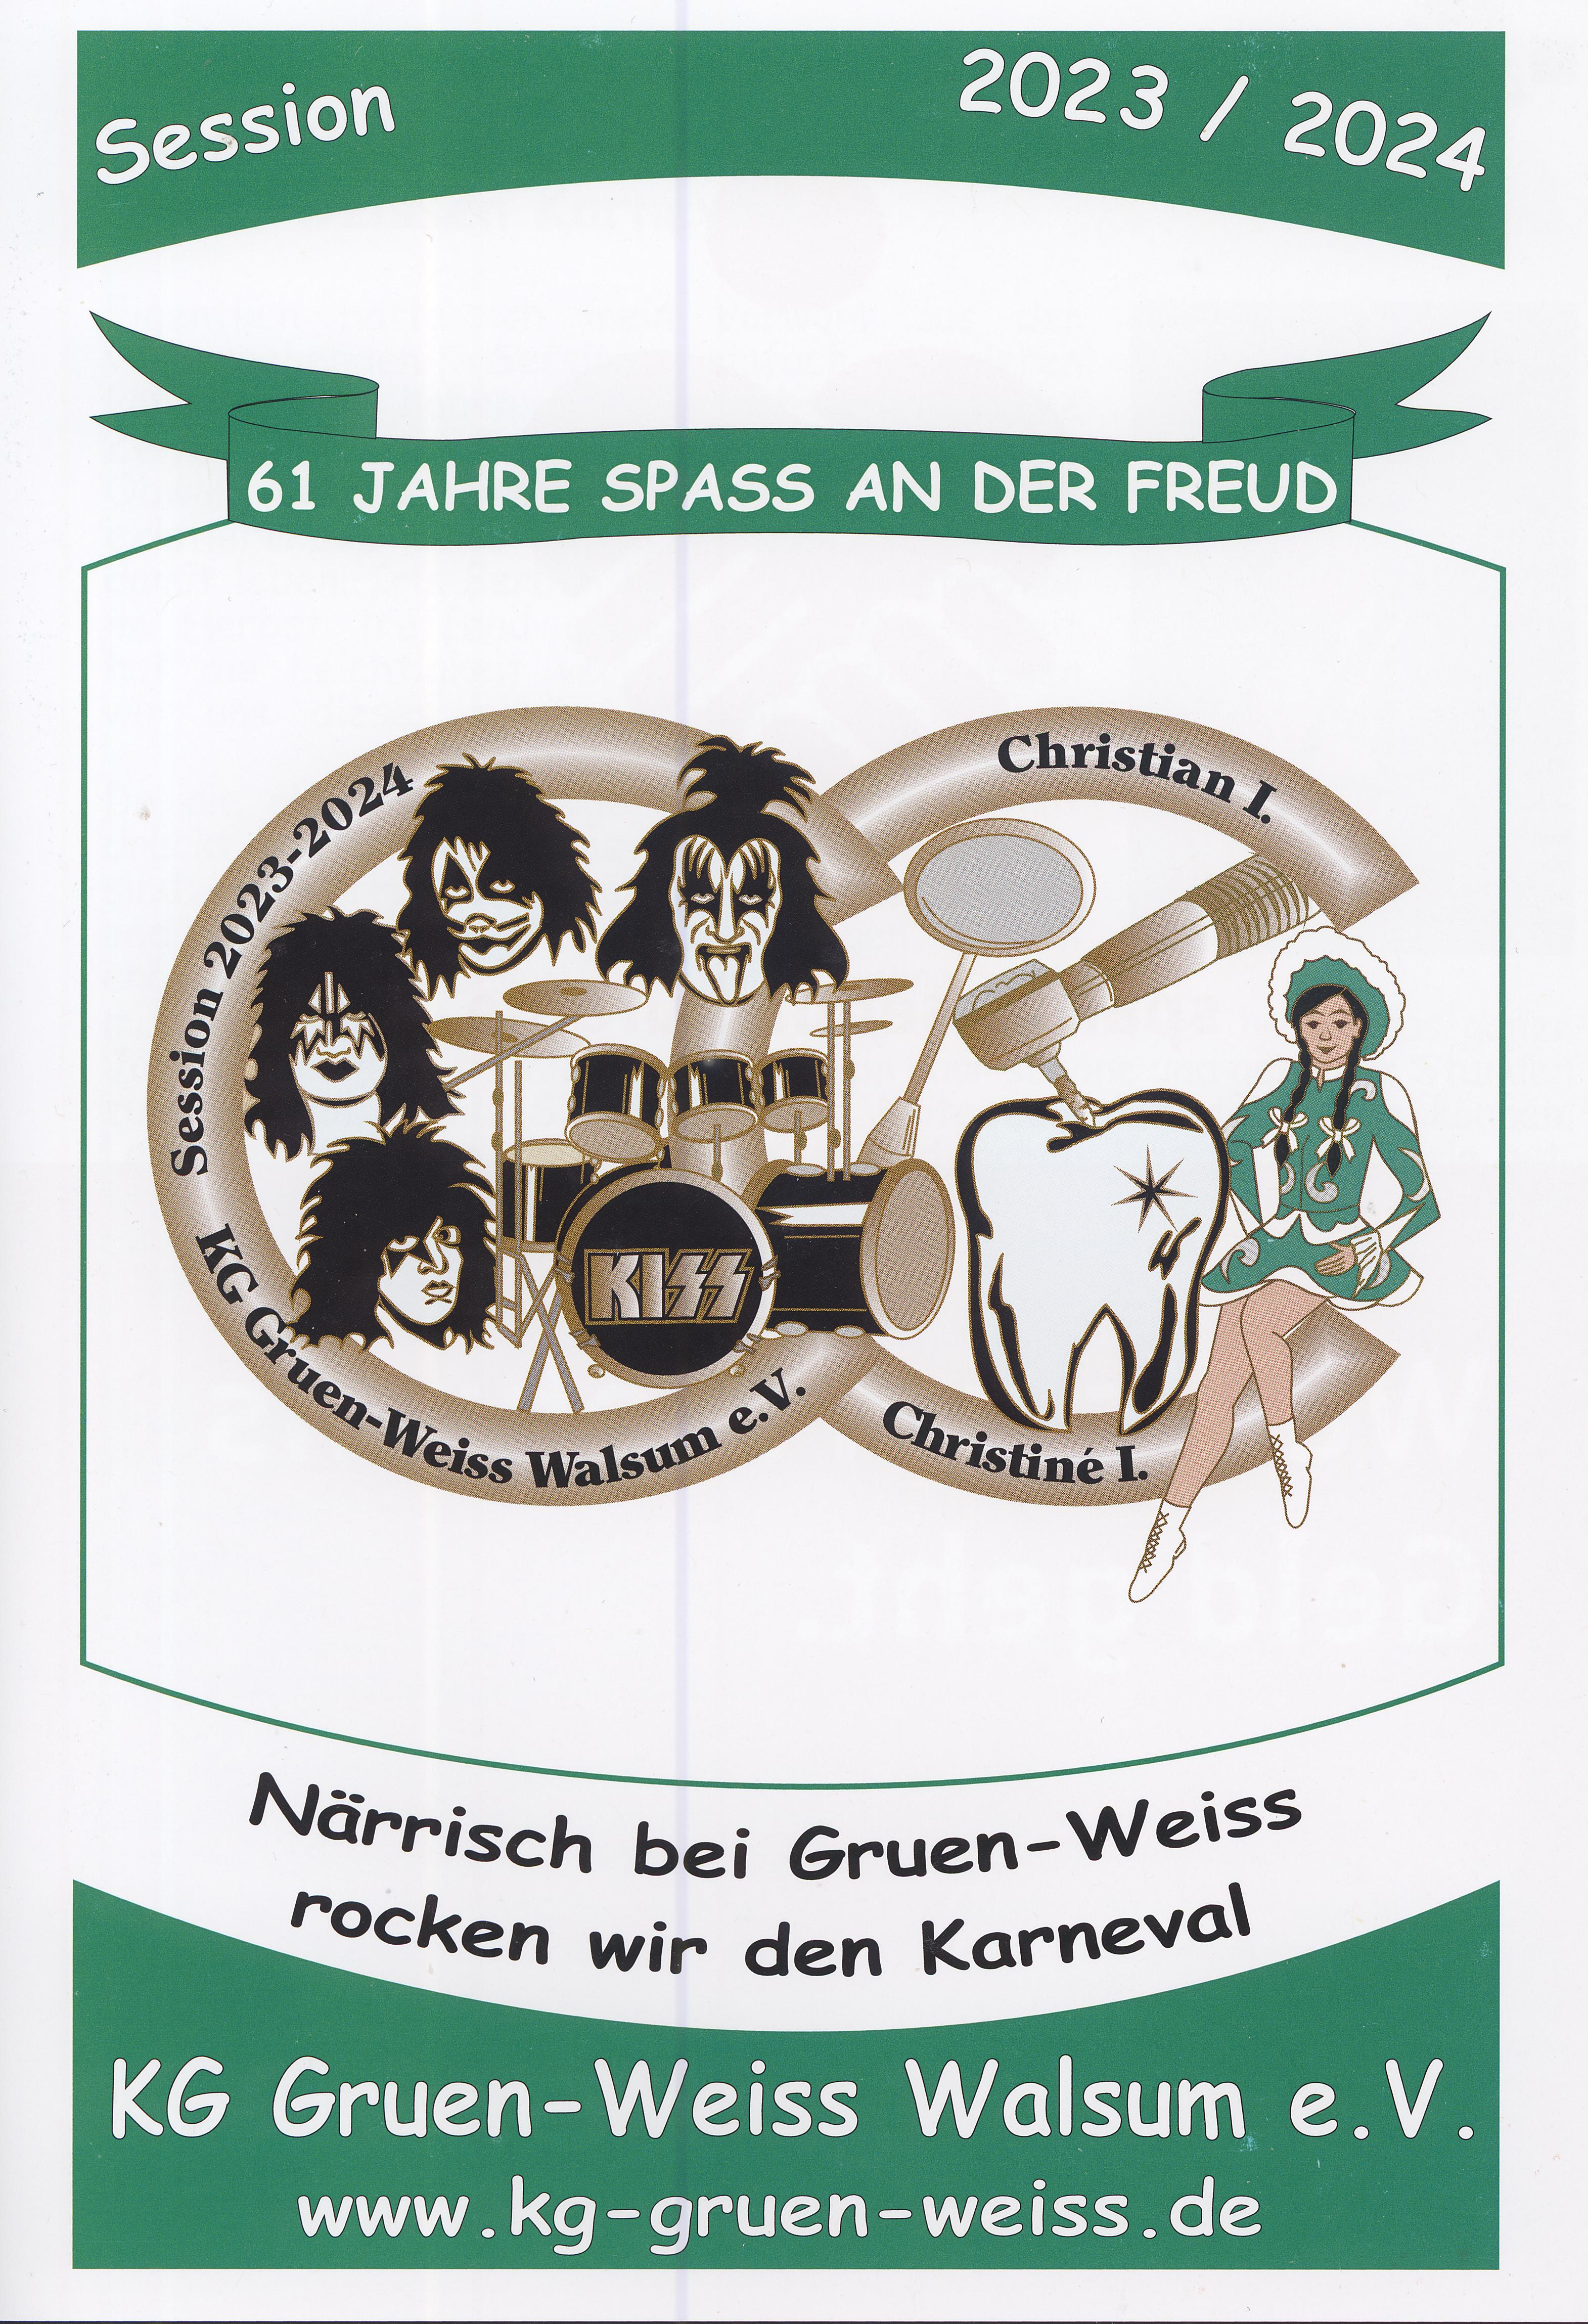 Karnevalsgesellschaft Gruen-Weiss Walsum - Startbild